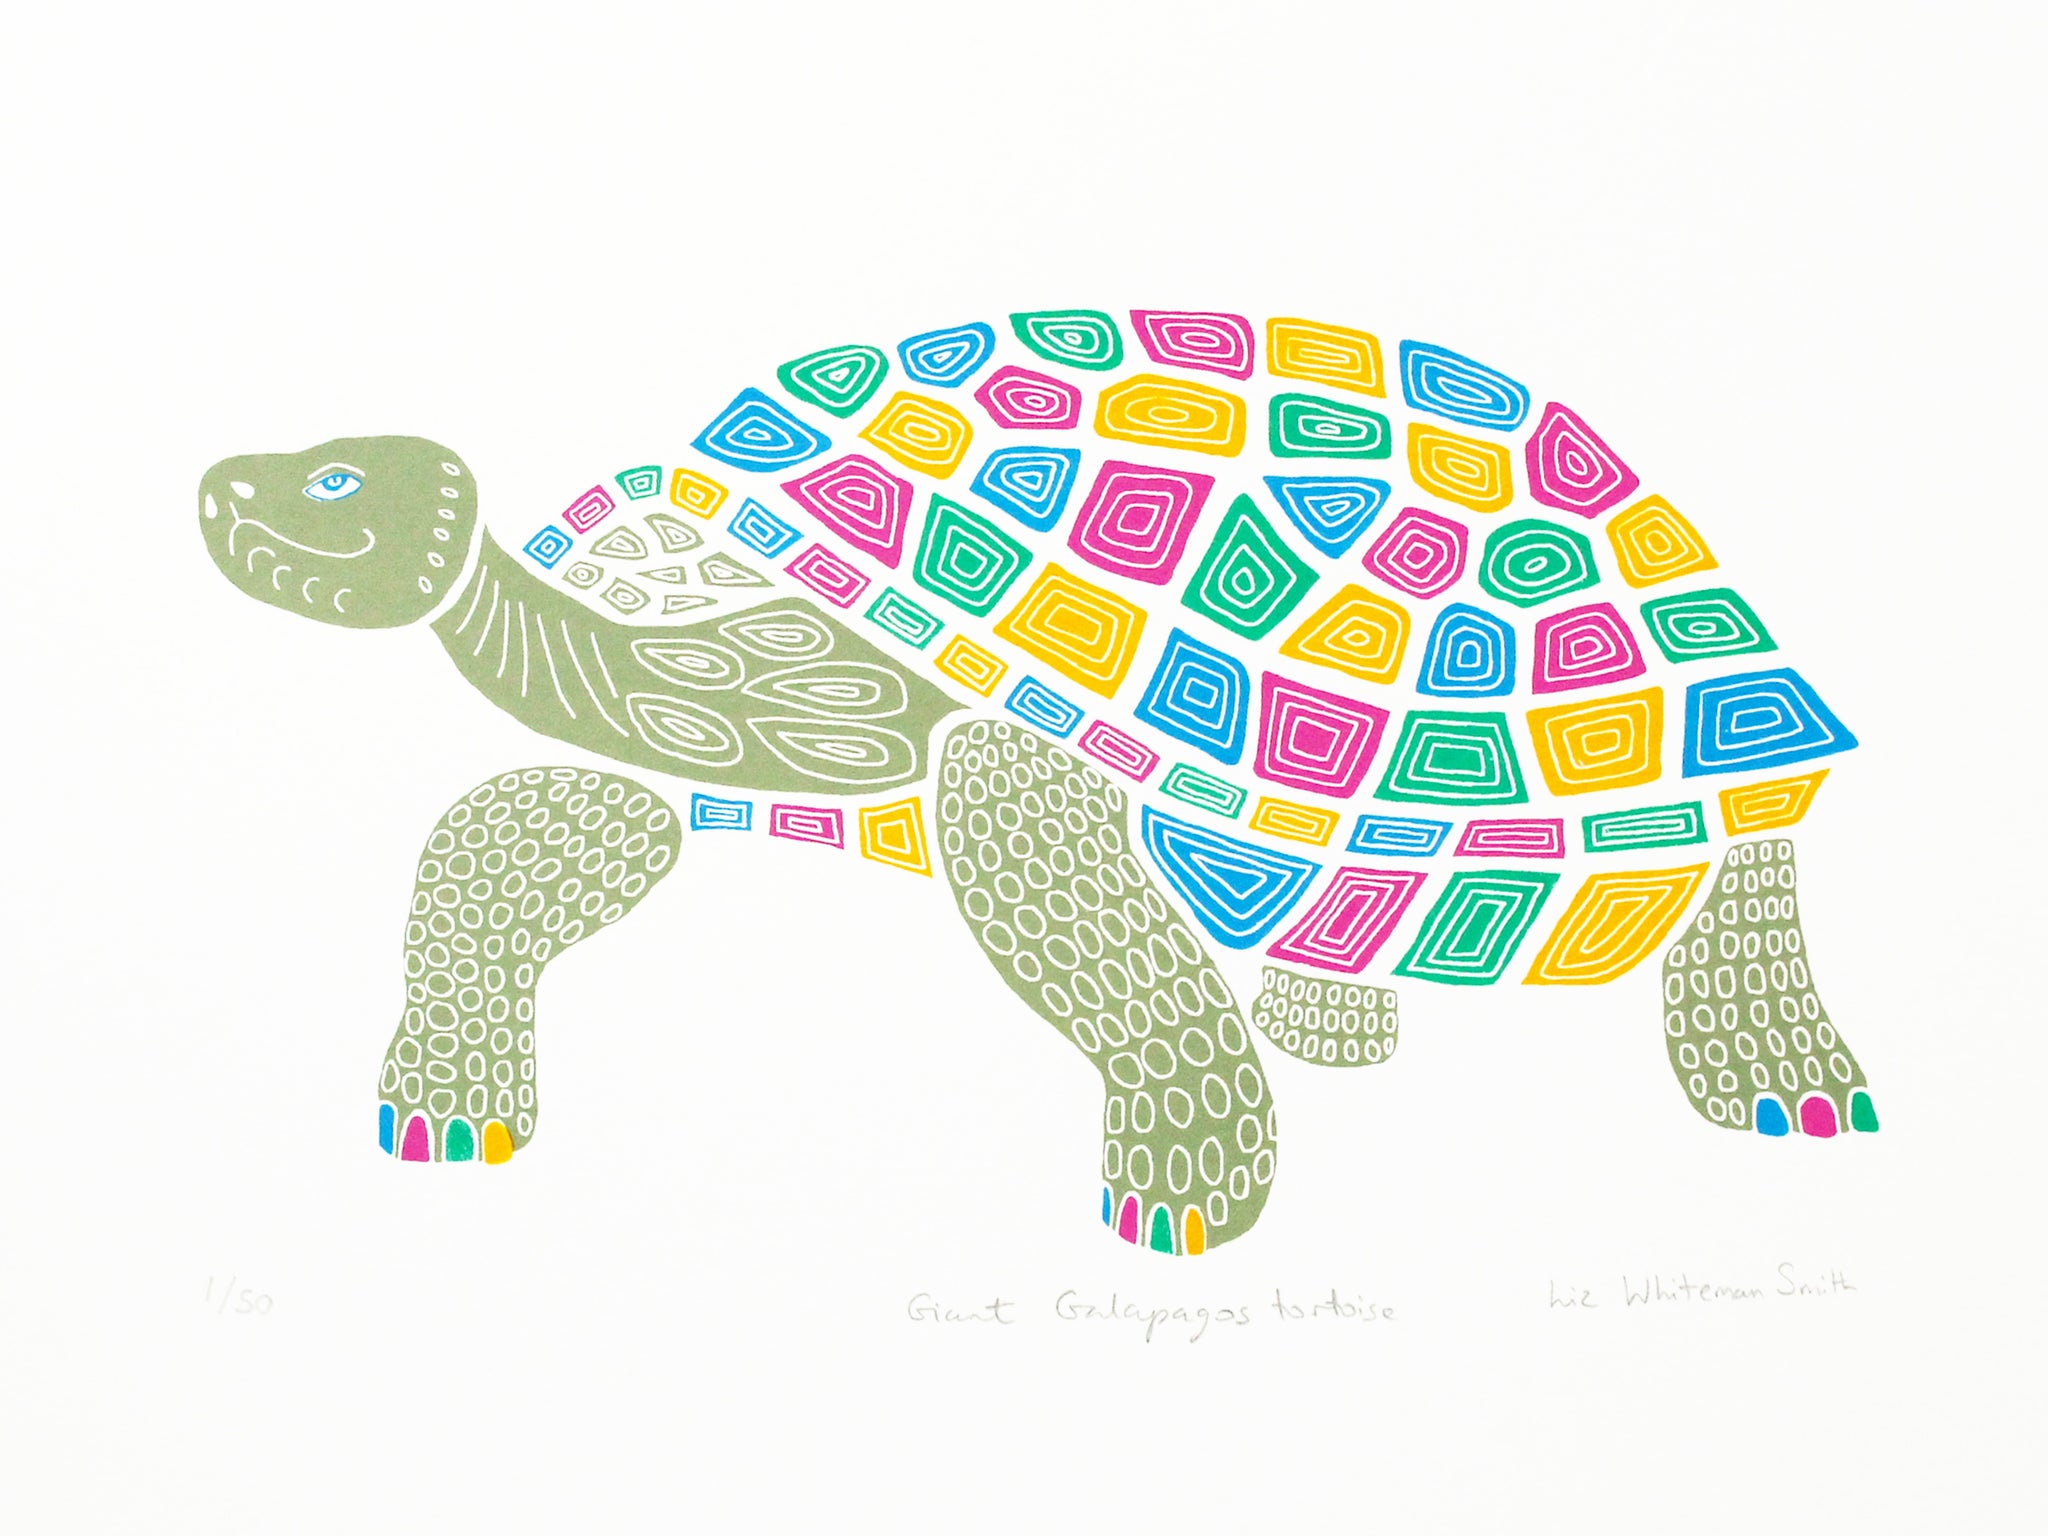 Giant Galapagos tortoise screen print by Liz Whiteman Smith